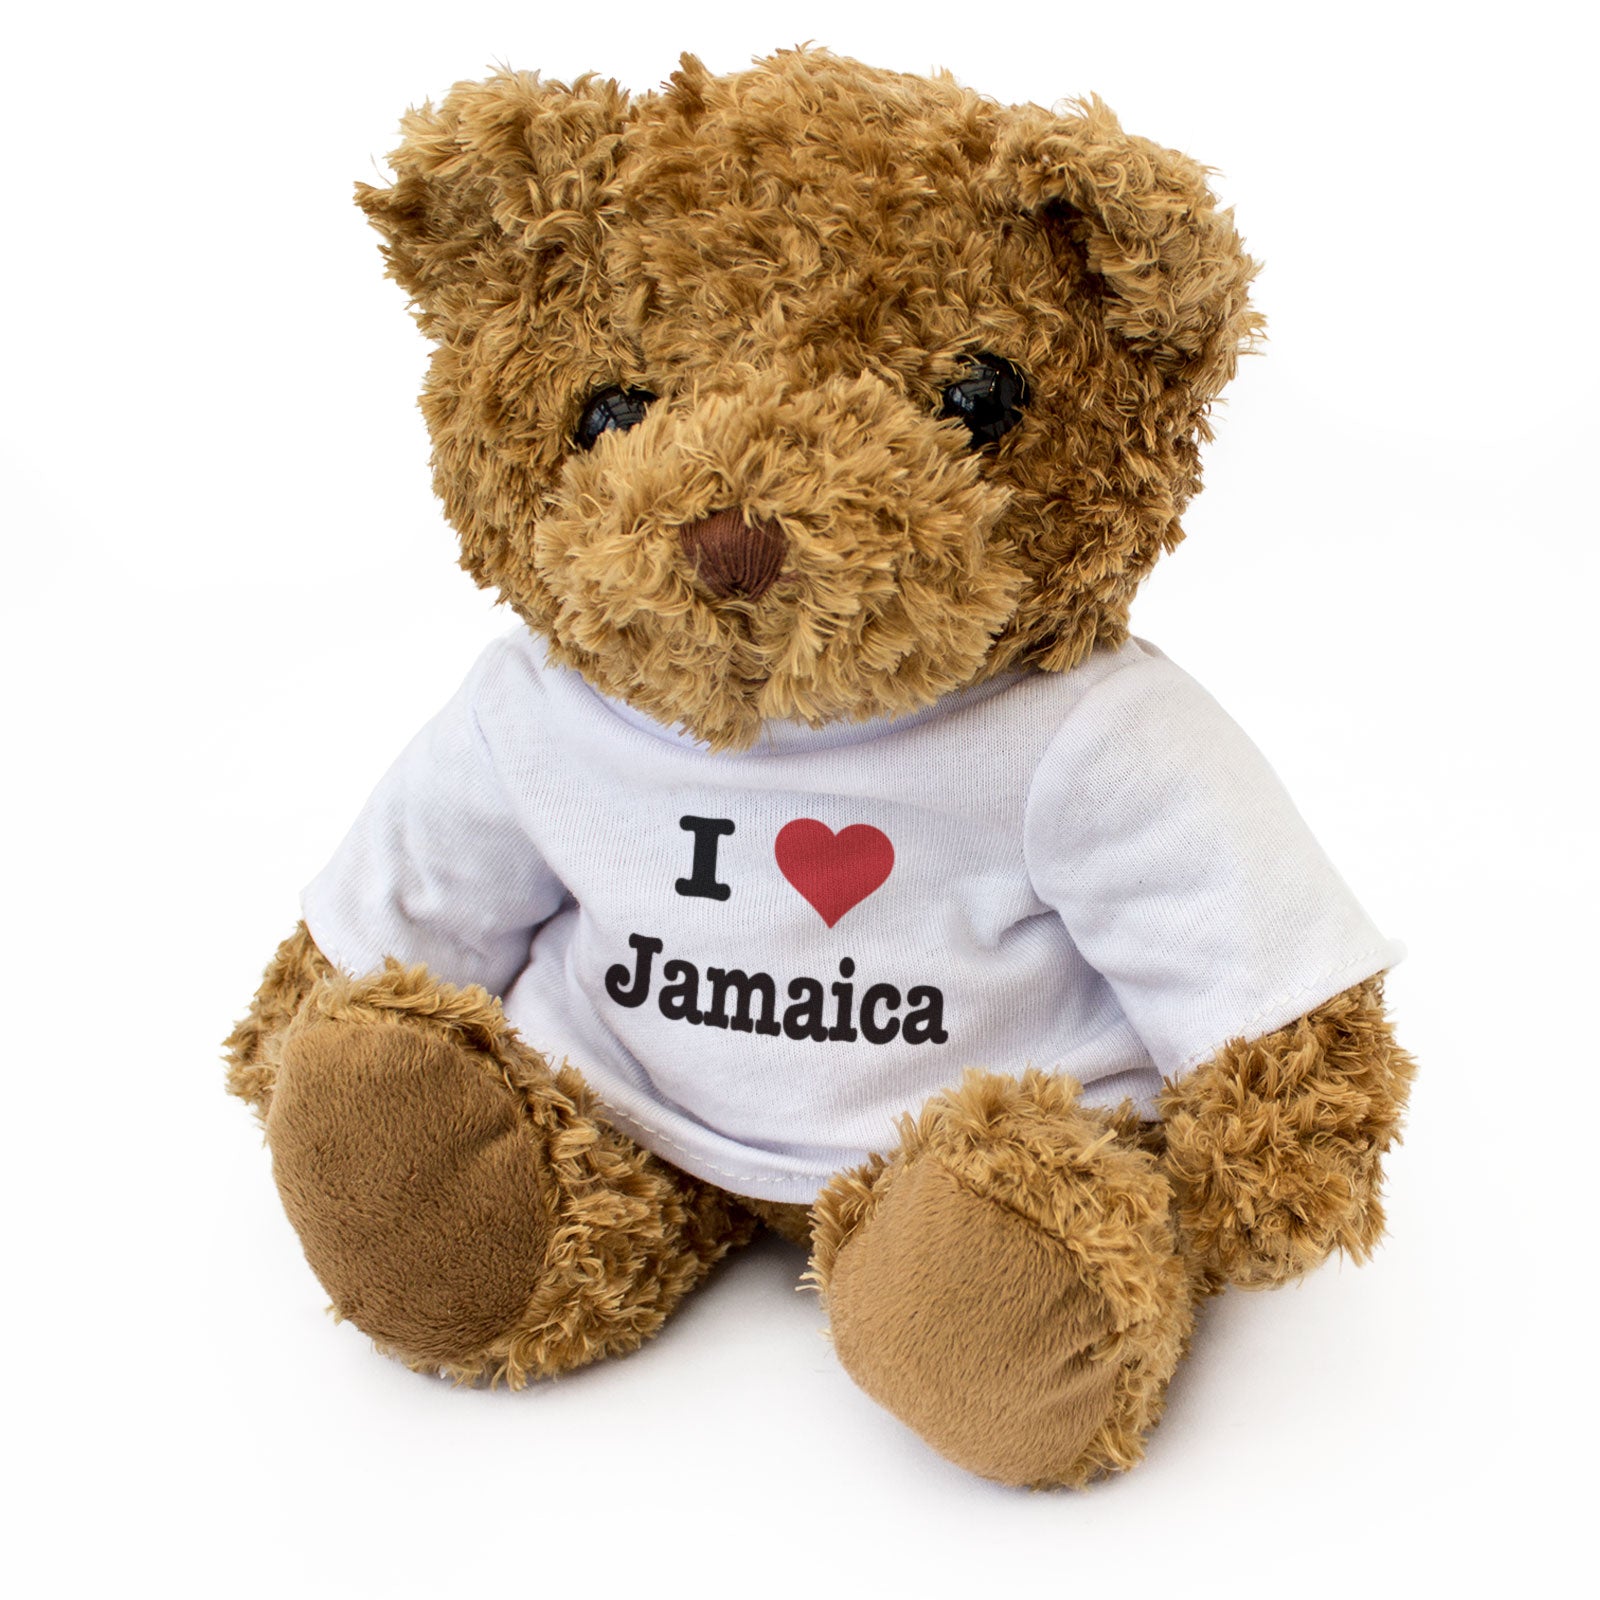 I Love Jamaica - Teddy Bear